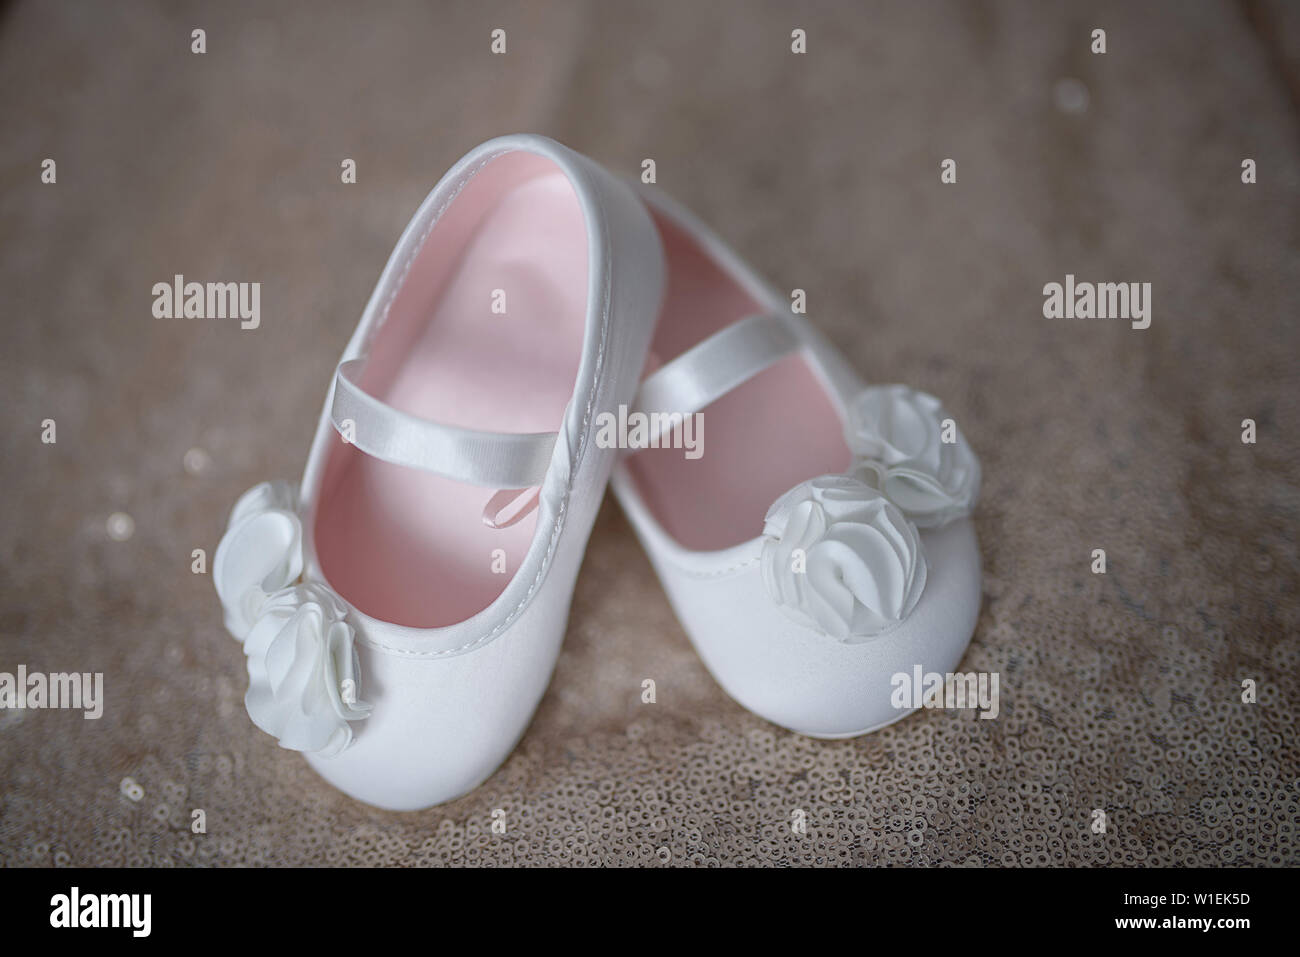 Blanc élégant chaussures ballerine chaussures adorables pour les petites  filles ou booties bébé fille blanc avec fleurs en mousseline et attache de  support élastique Photo Stock - Alamy